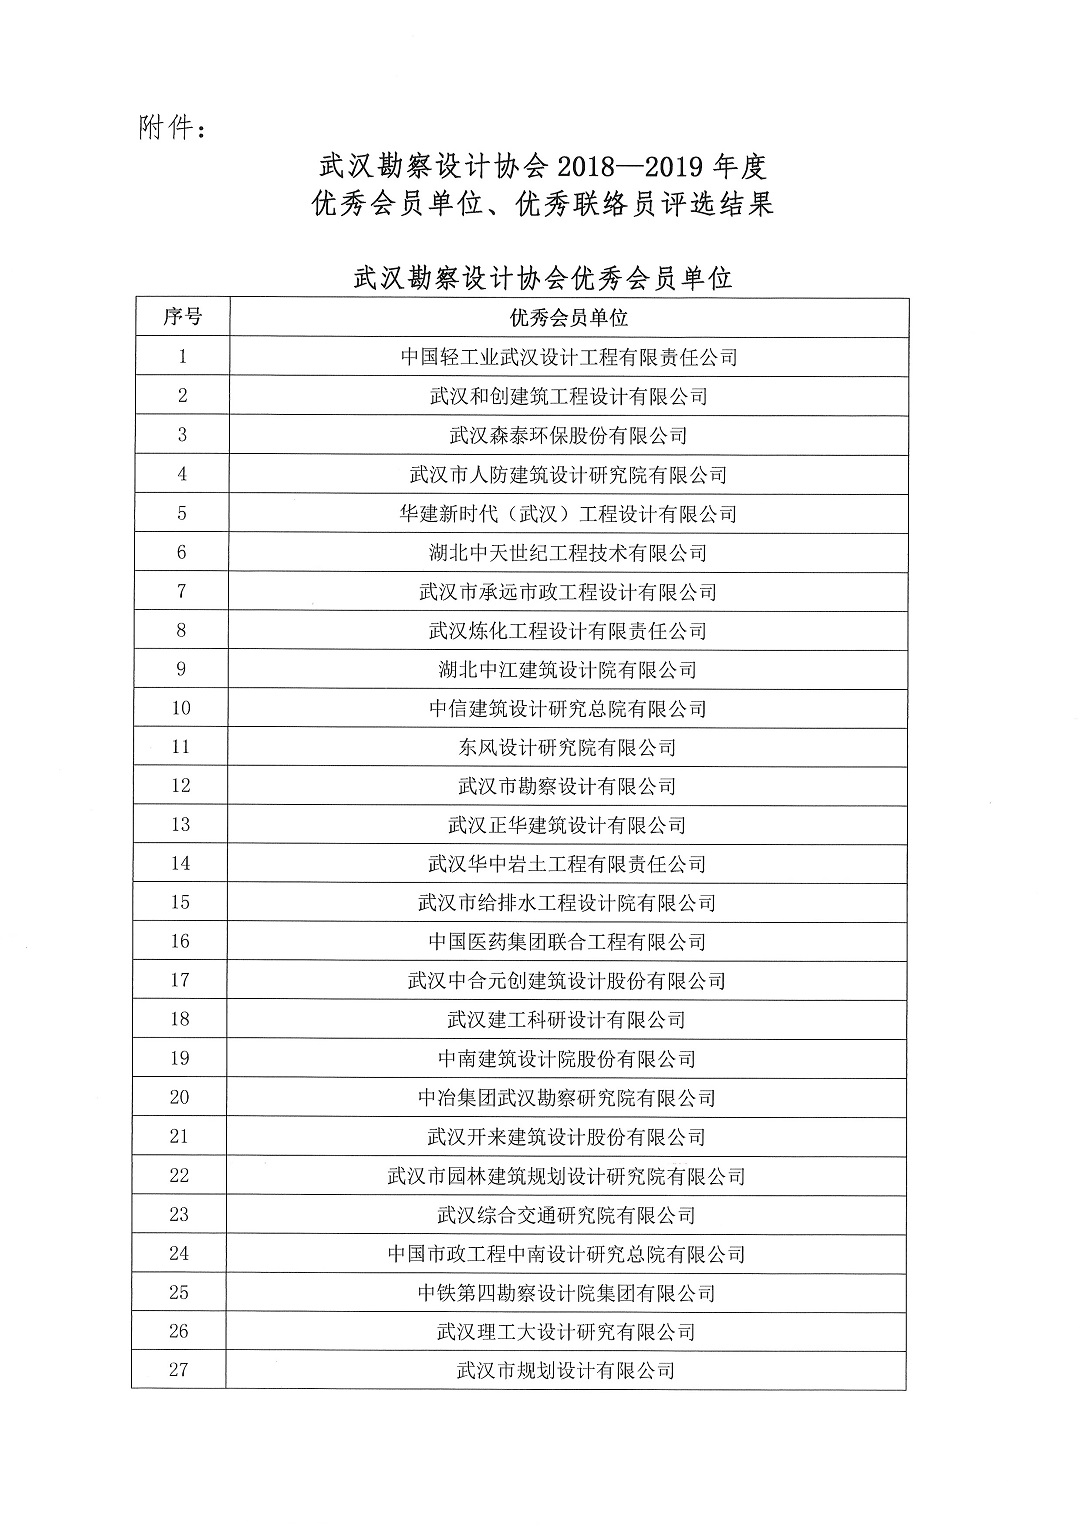 关于武汉勘察设计协会2018-2019年度优秀会员单位优秀联络员评选结果的公告